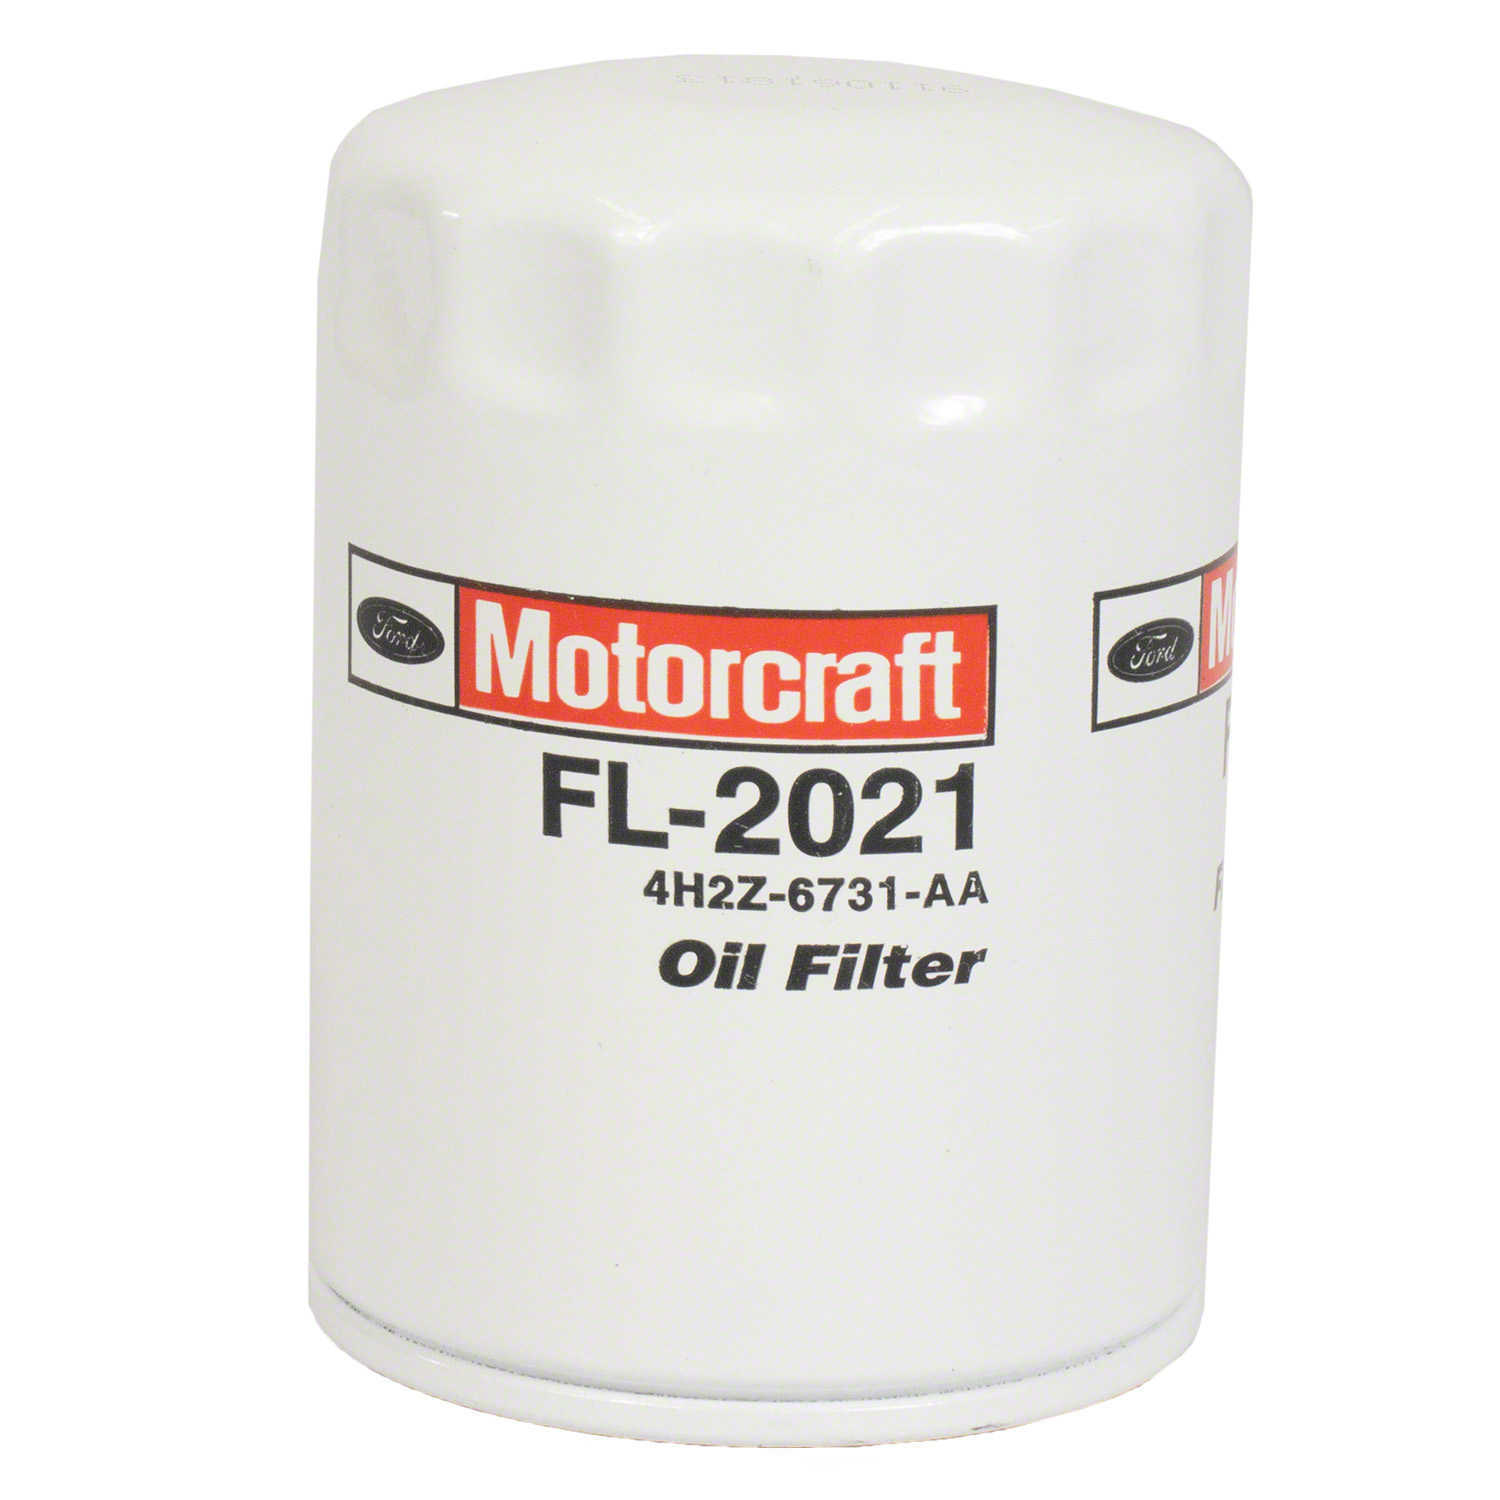 MOTORCRAFT - Engine Oil Filter - MOT FL-2021